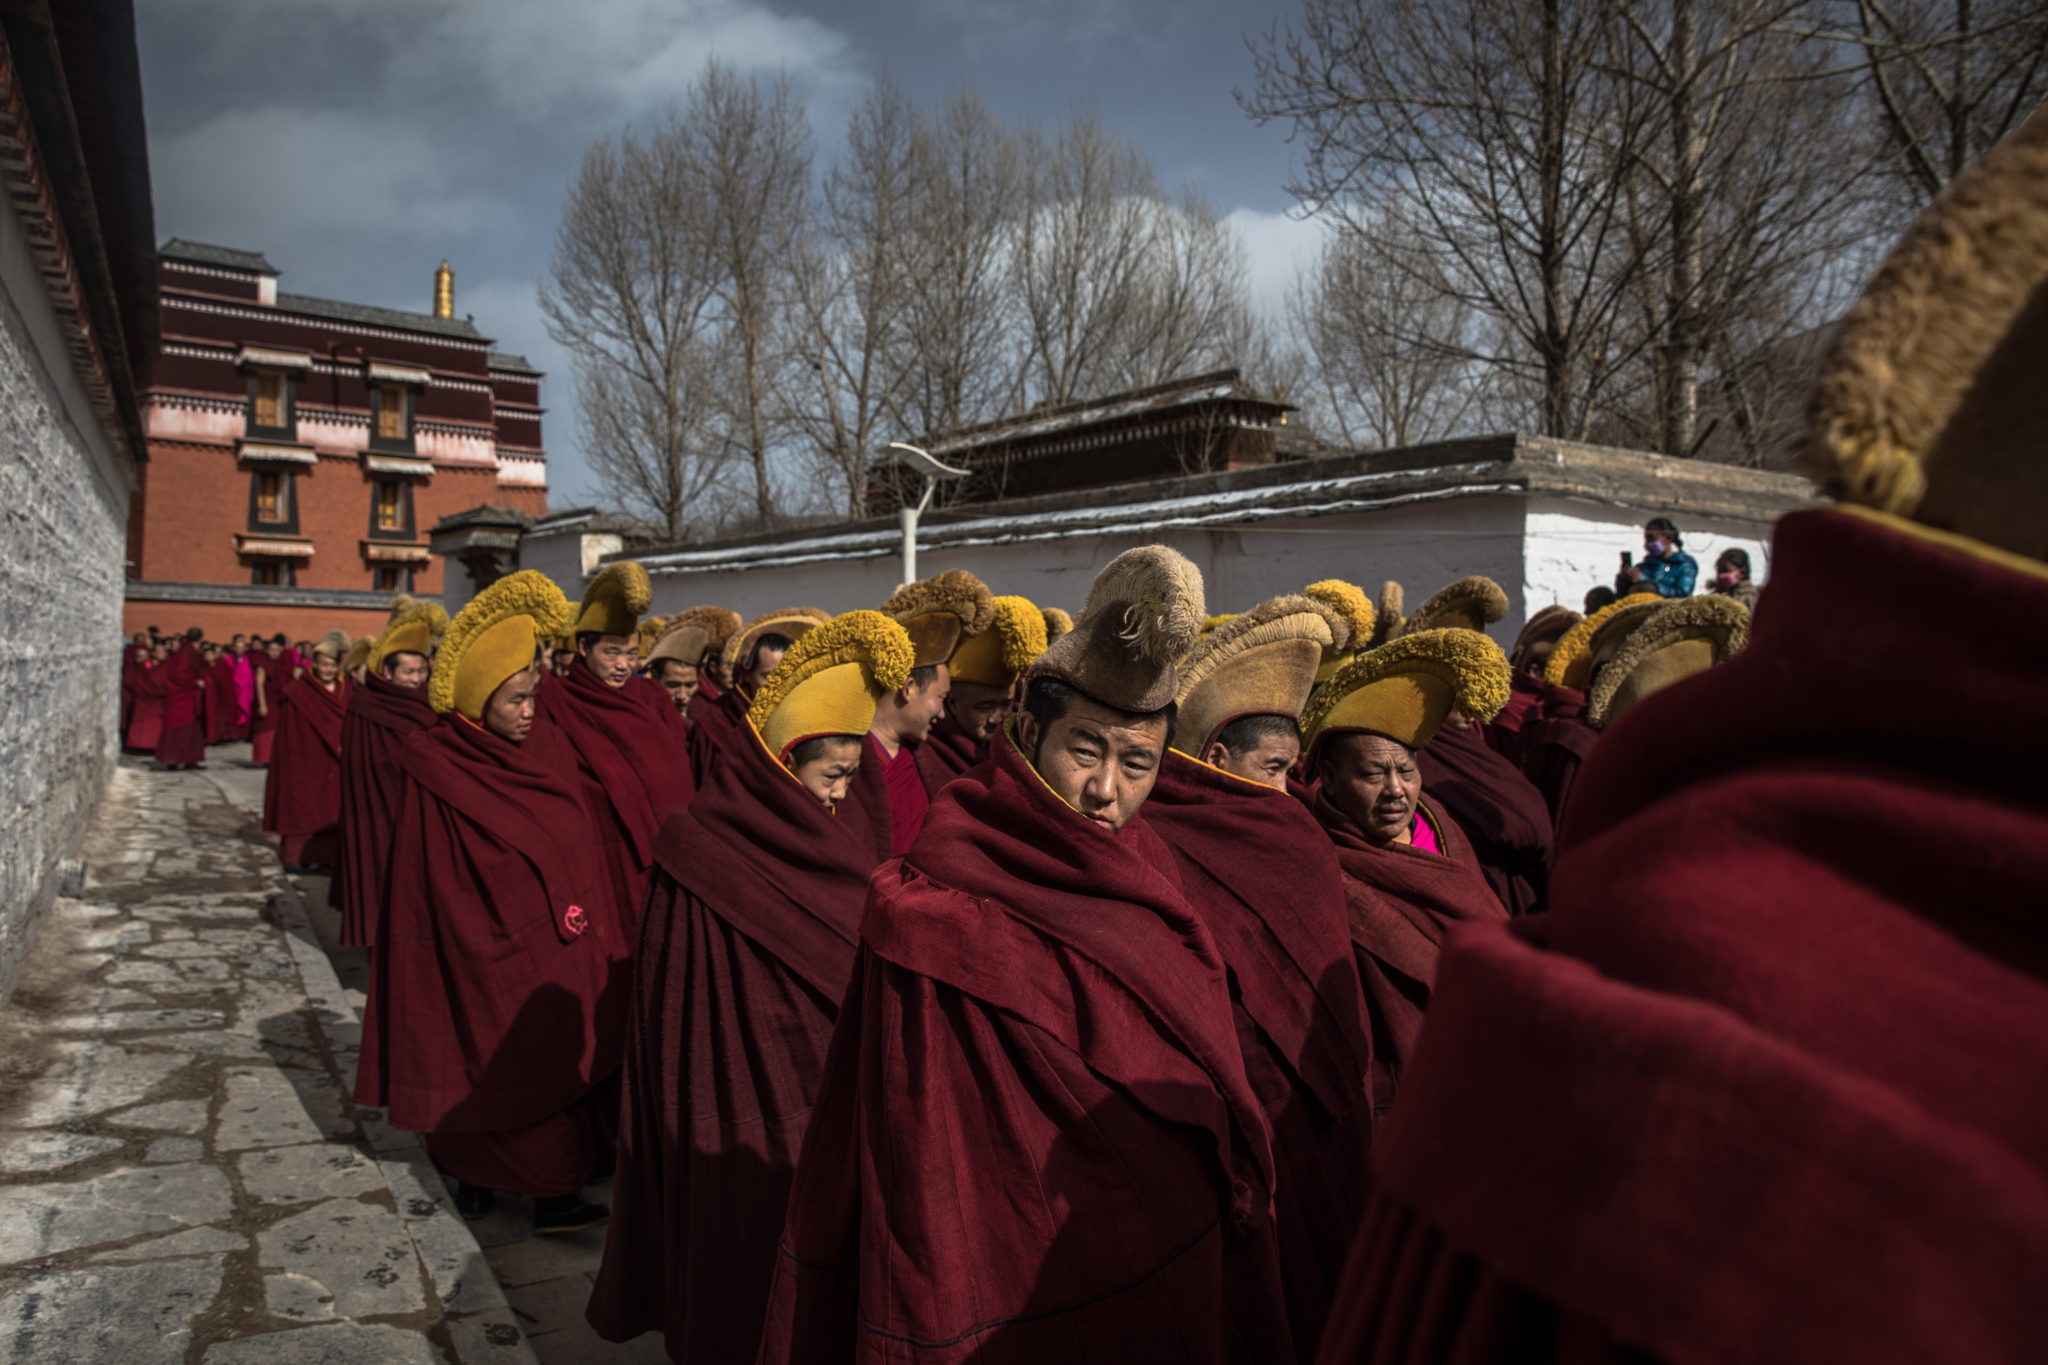 Wielki Festiwal Modlitwy Monlam rozpoczyna się trzy dni po tybetańskim Nowym Roku i trwa prawie dwa tygodnie, fot. ROMAN PILIPEY, PAP/EPA